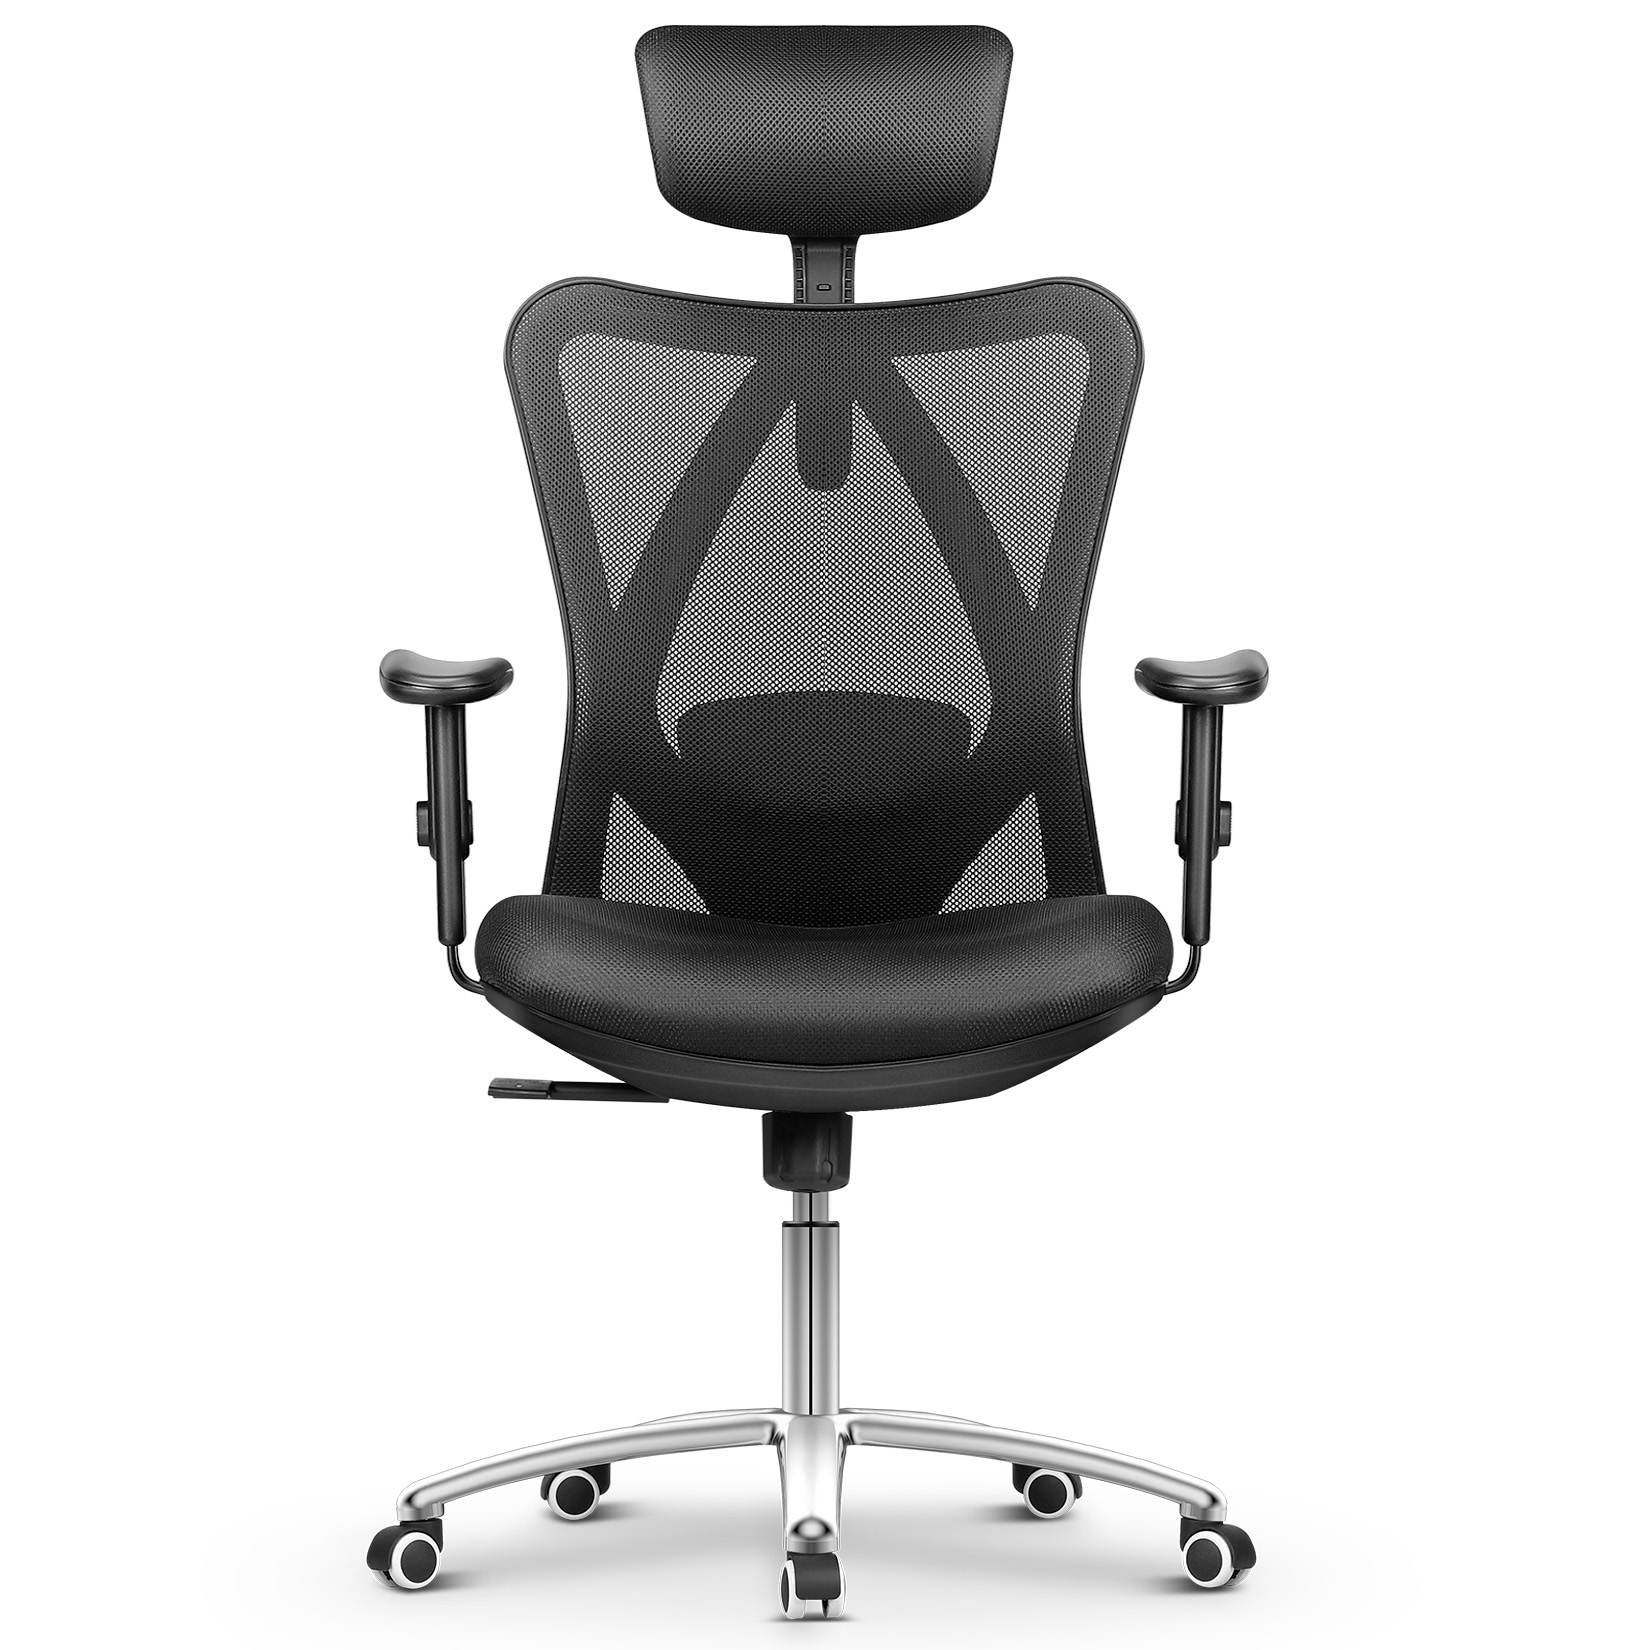 mfavour Siège Confortable Chaise de Bureau Fauteuil Ergonomique avec Accoudoirs Réglable Hauteur App